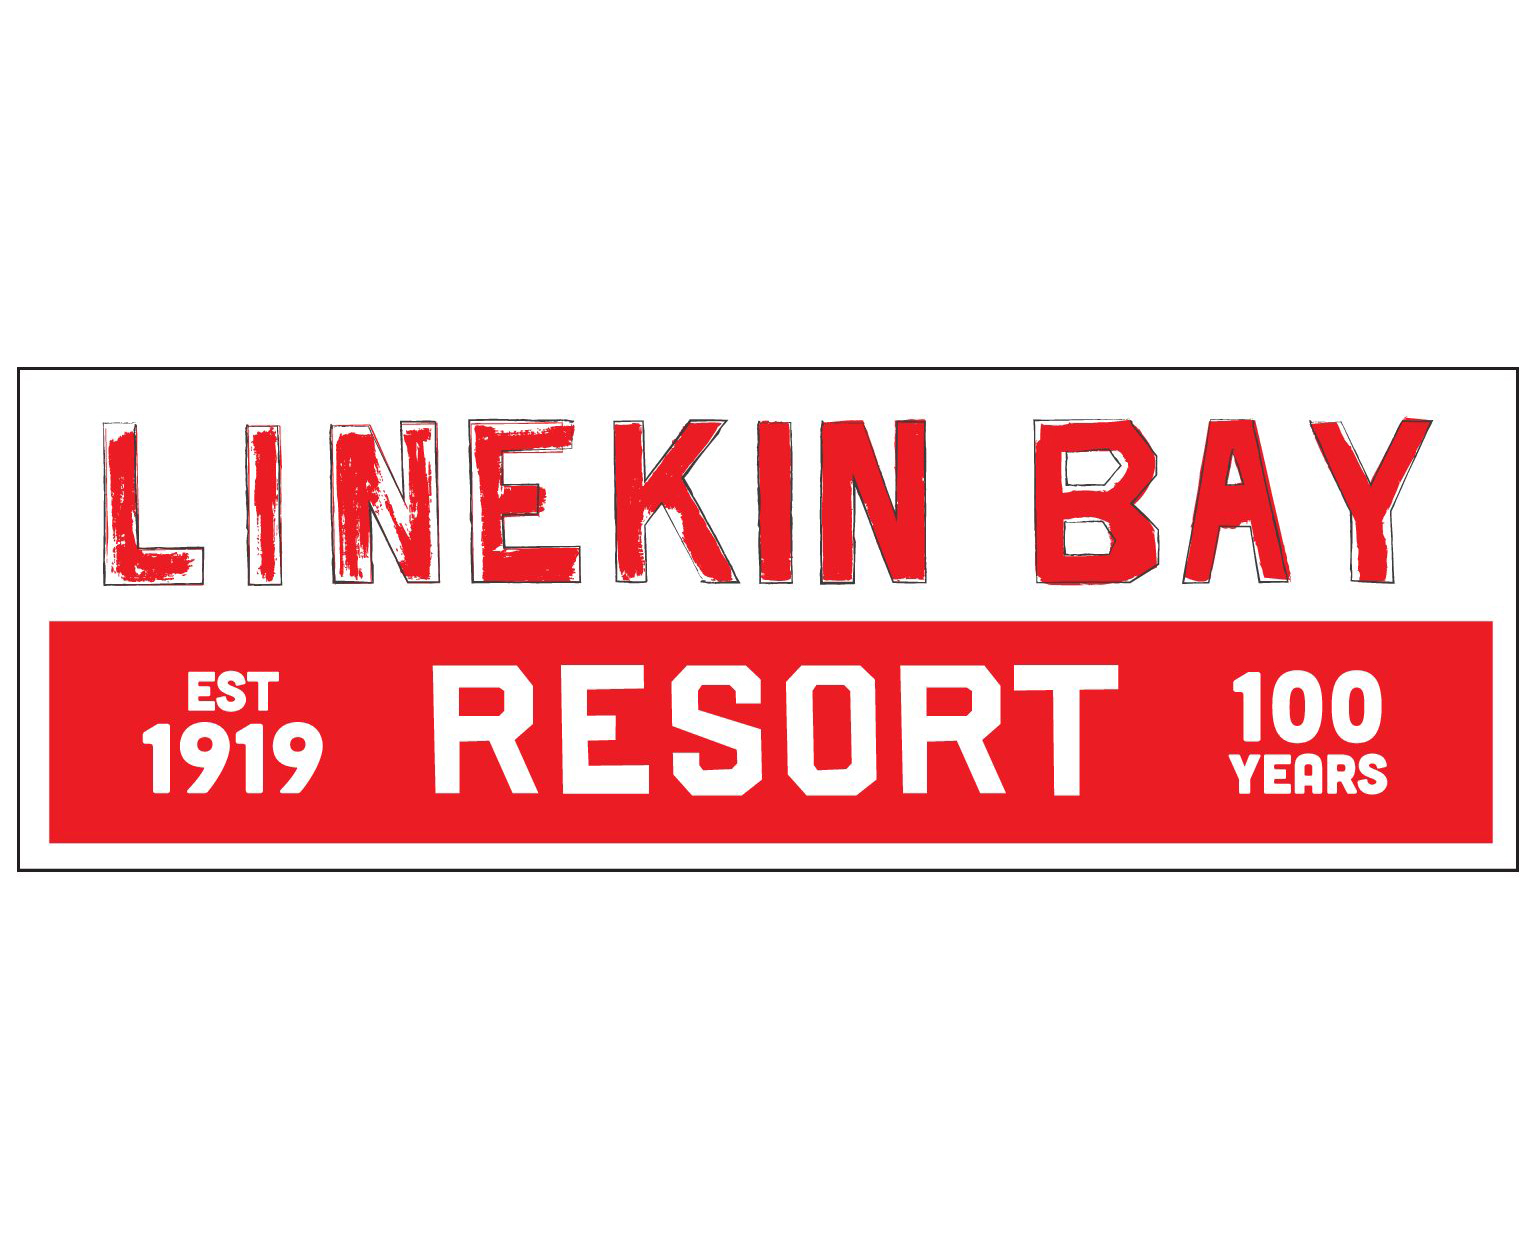 Linekin Bay Resort retro sign. Text: Linekin Bay Resort. Est 1919. 100 Years.